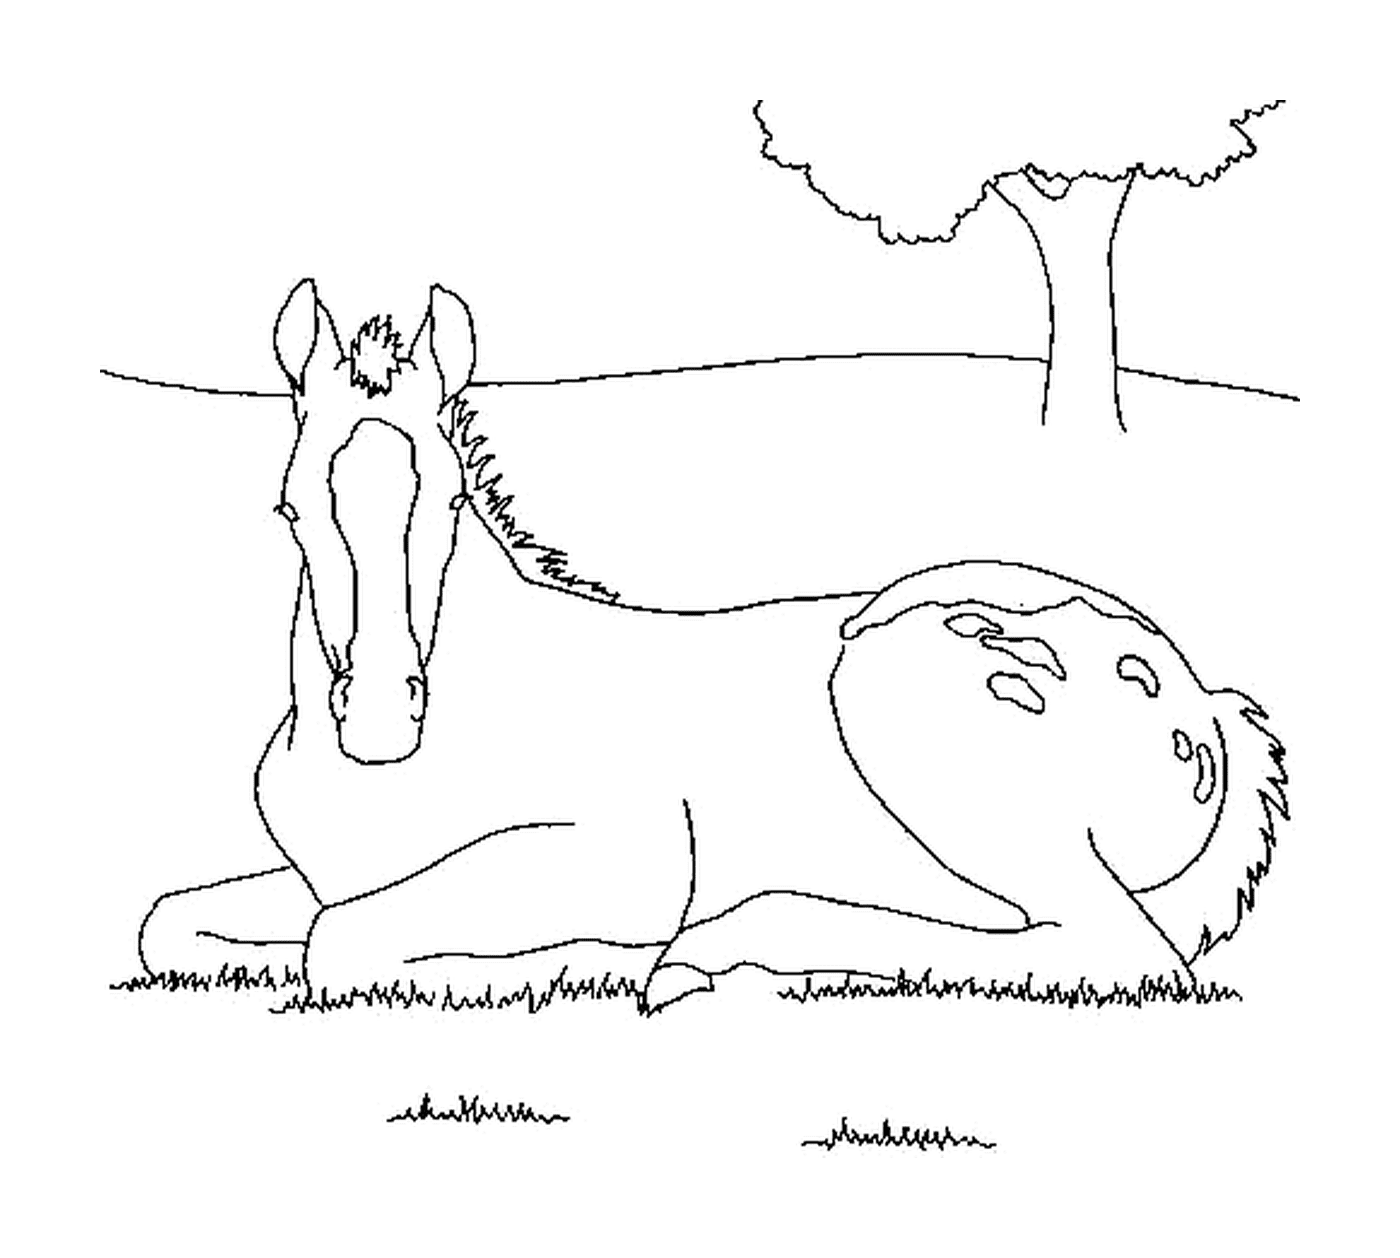  Pferd bequem im Gras installiert 